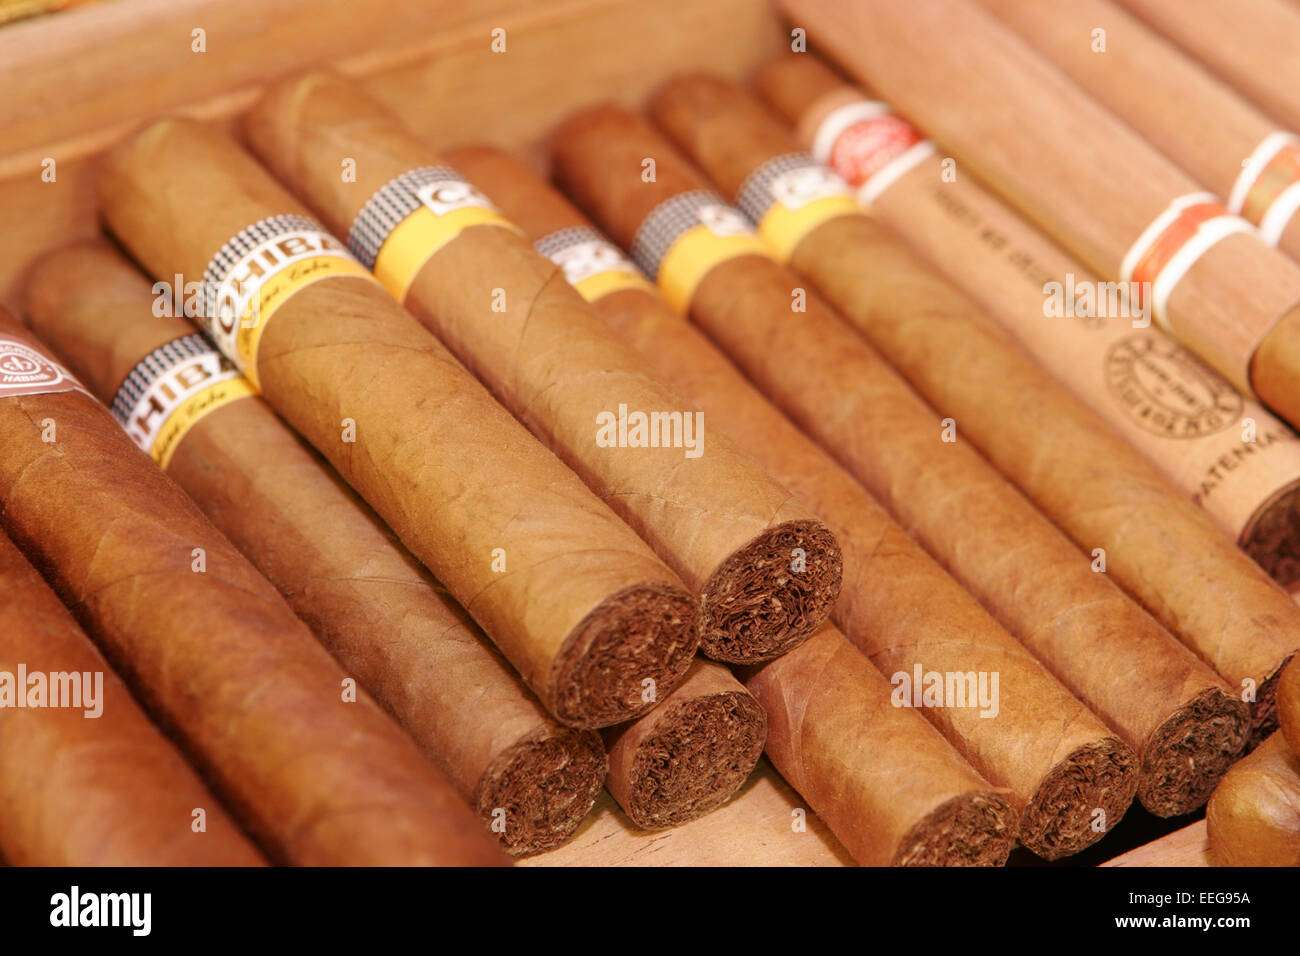 Rauchen, Zigarren, Genussmittel, Genuss, Sucht, Luxus, Tabak, Cohiba, Kiste Zigarrenkiste Kubanische,,,,, Drogen Zigarre Droge, Foto de stock